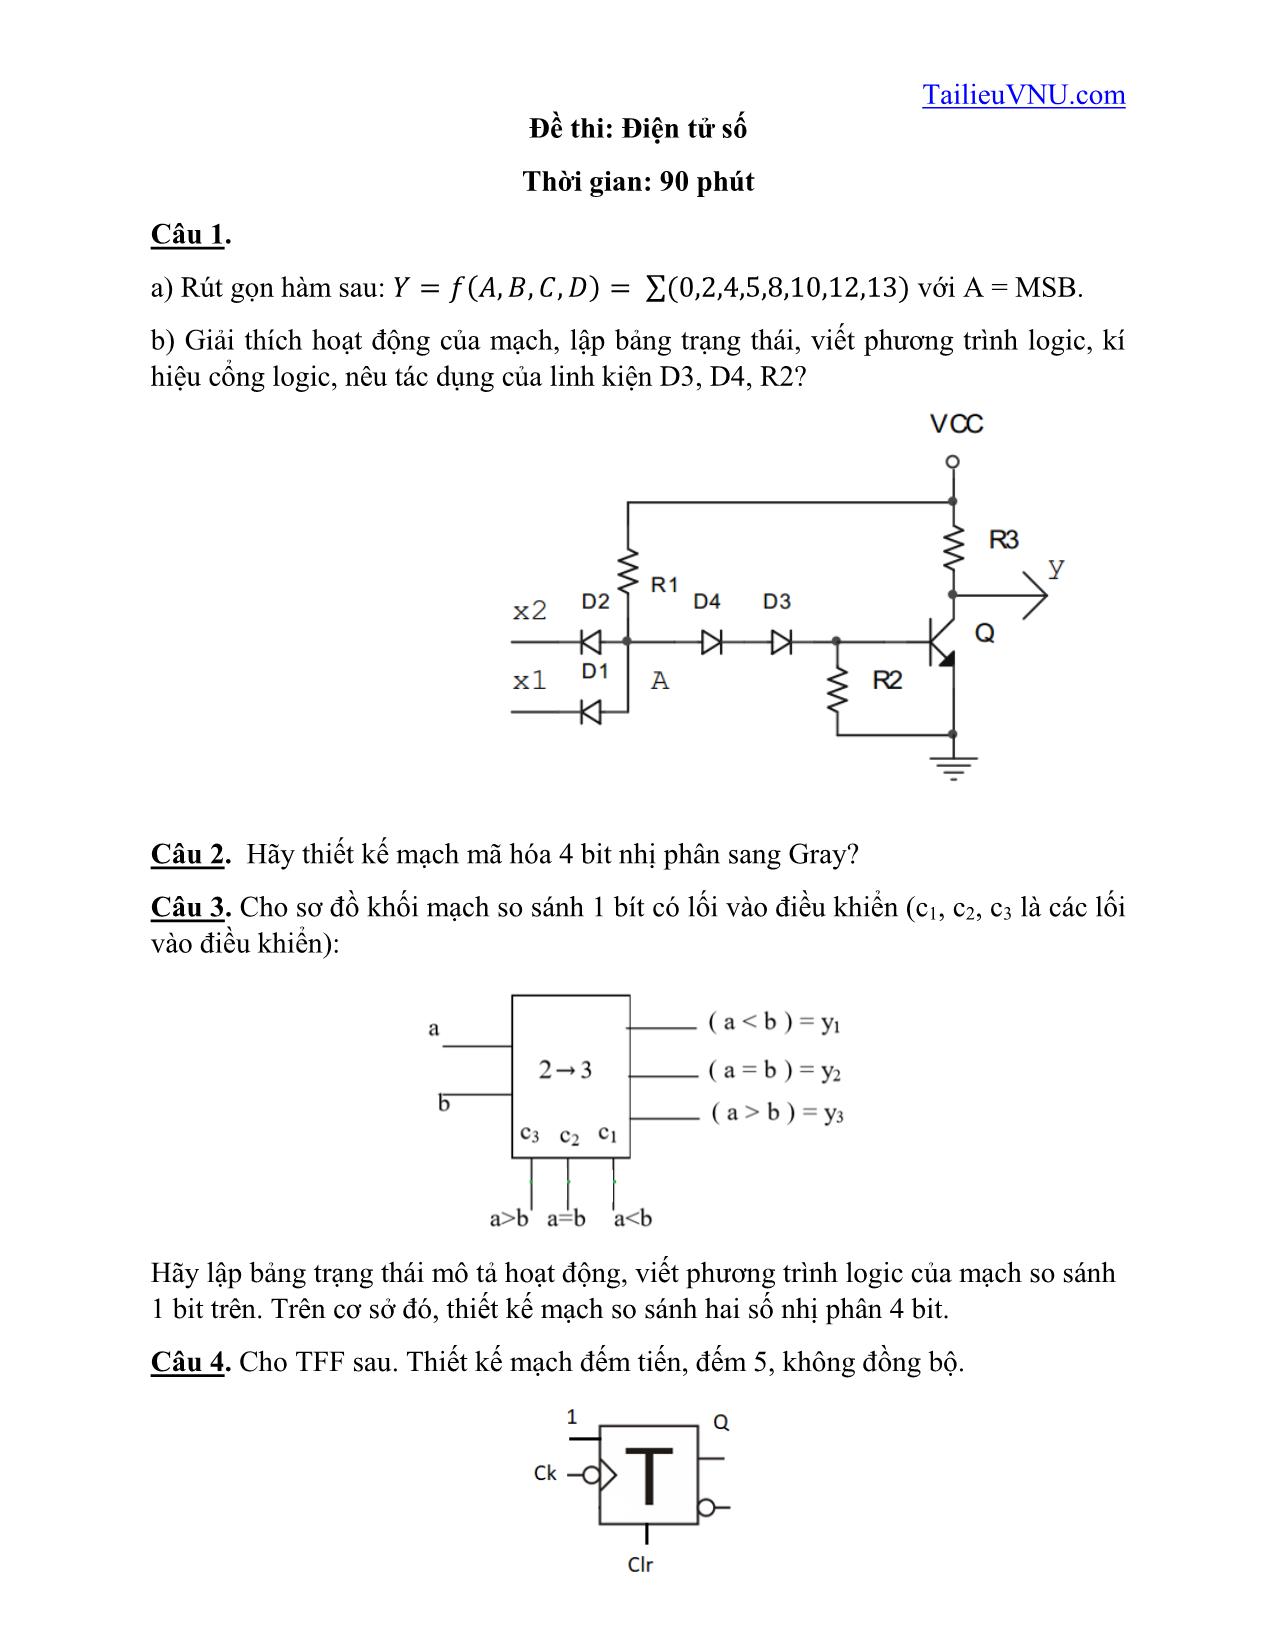 Đề thi Điện tử số - K61 trang 1